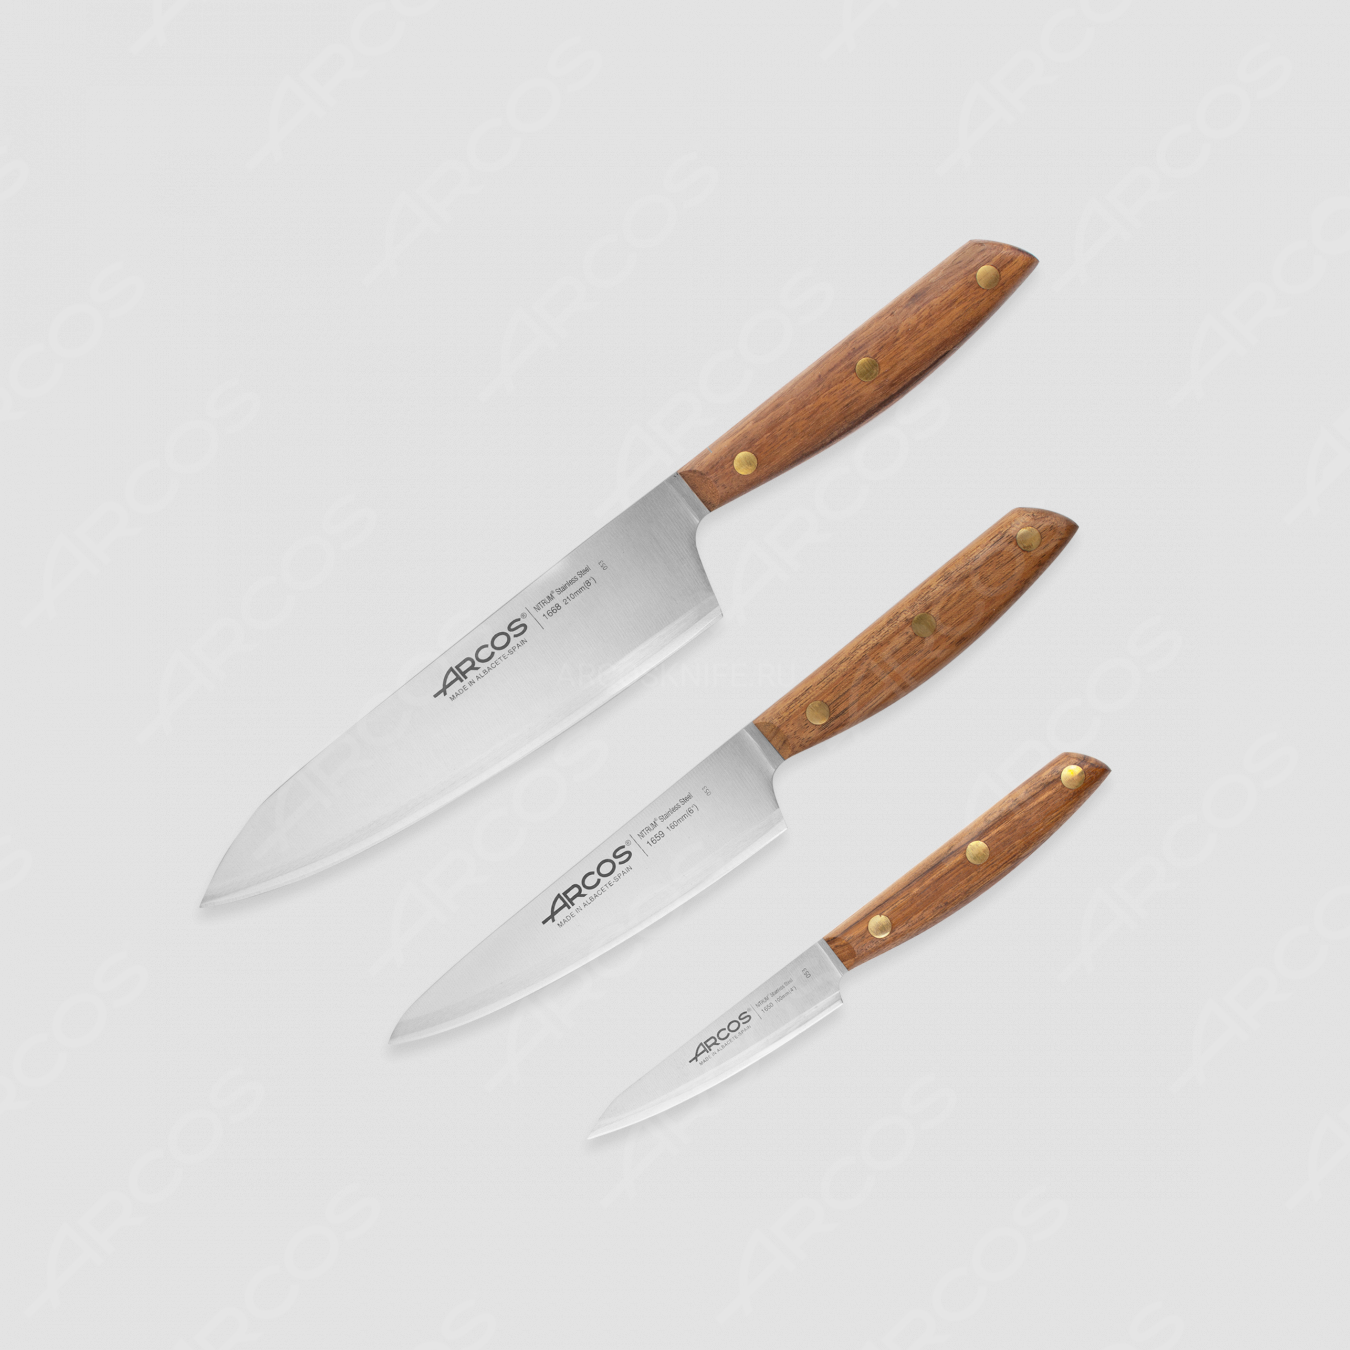 Набор кухонных ножей 3 штуки (10 см, 16 см, 21 см), серия Nordika, ARCOS, Испания